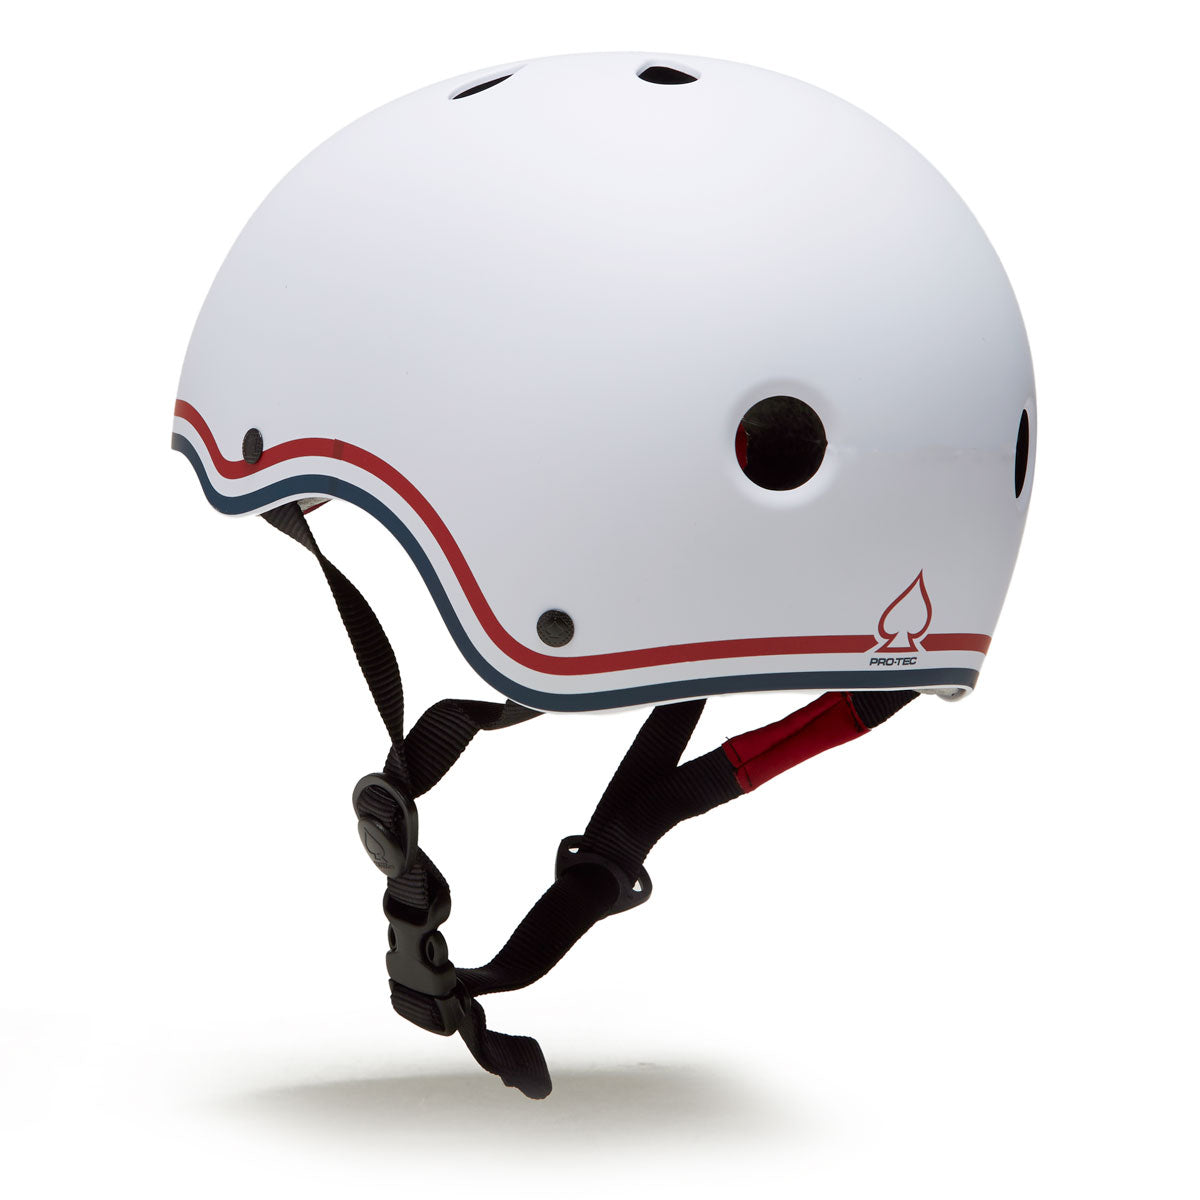 Pro Tec USA Skateboarding Helmet - White image 2